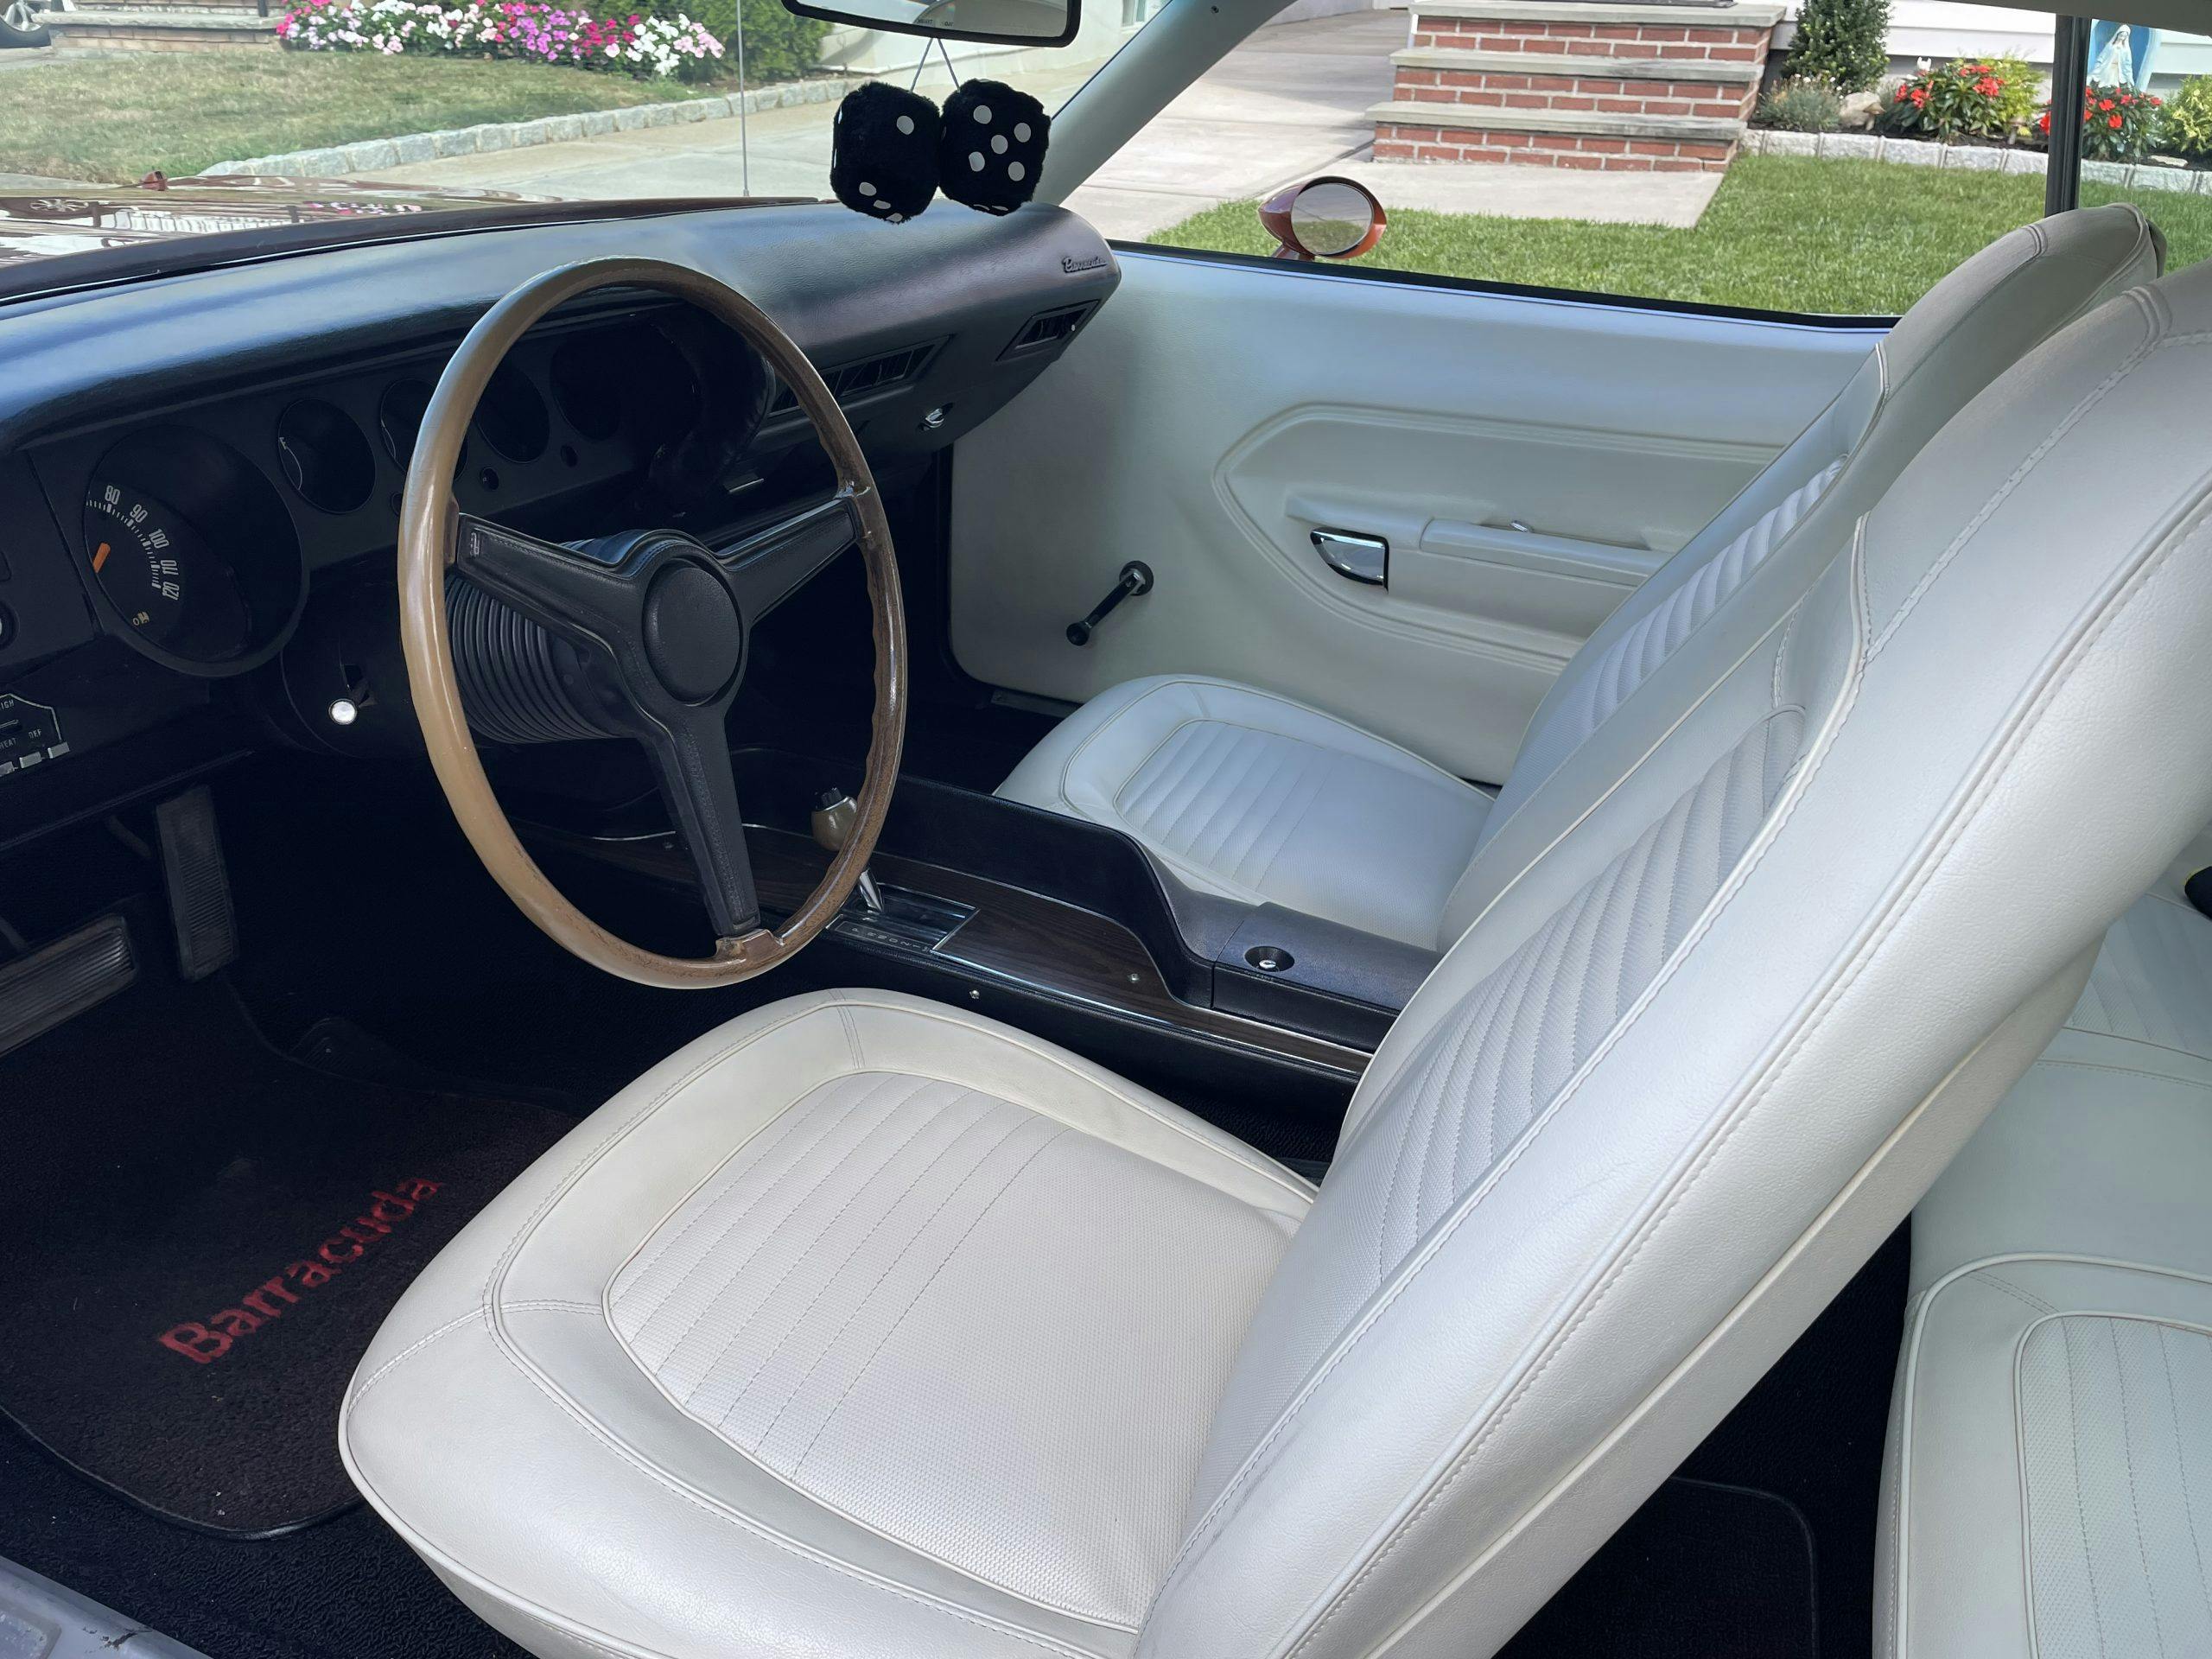 Plymouth Barracuda interior